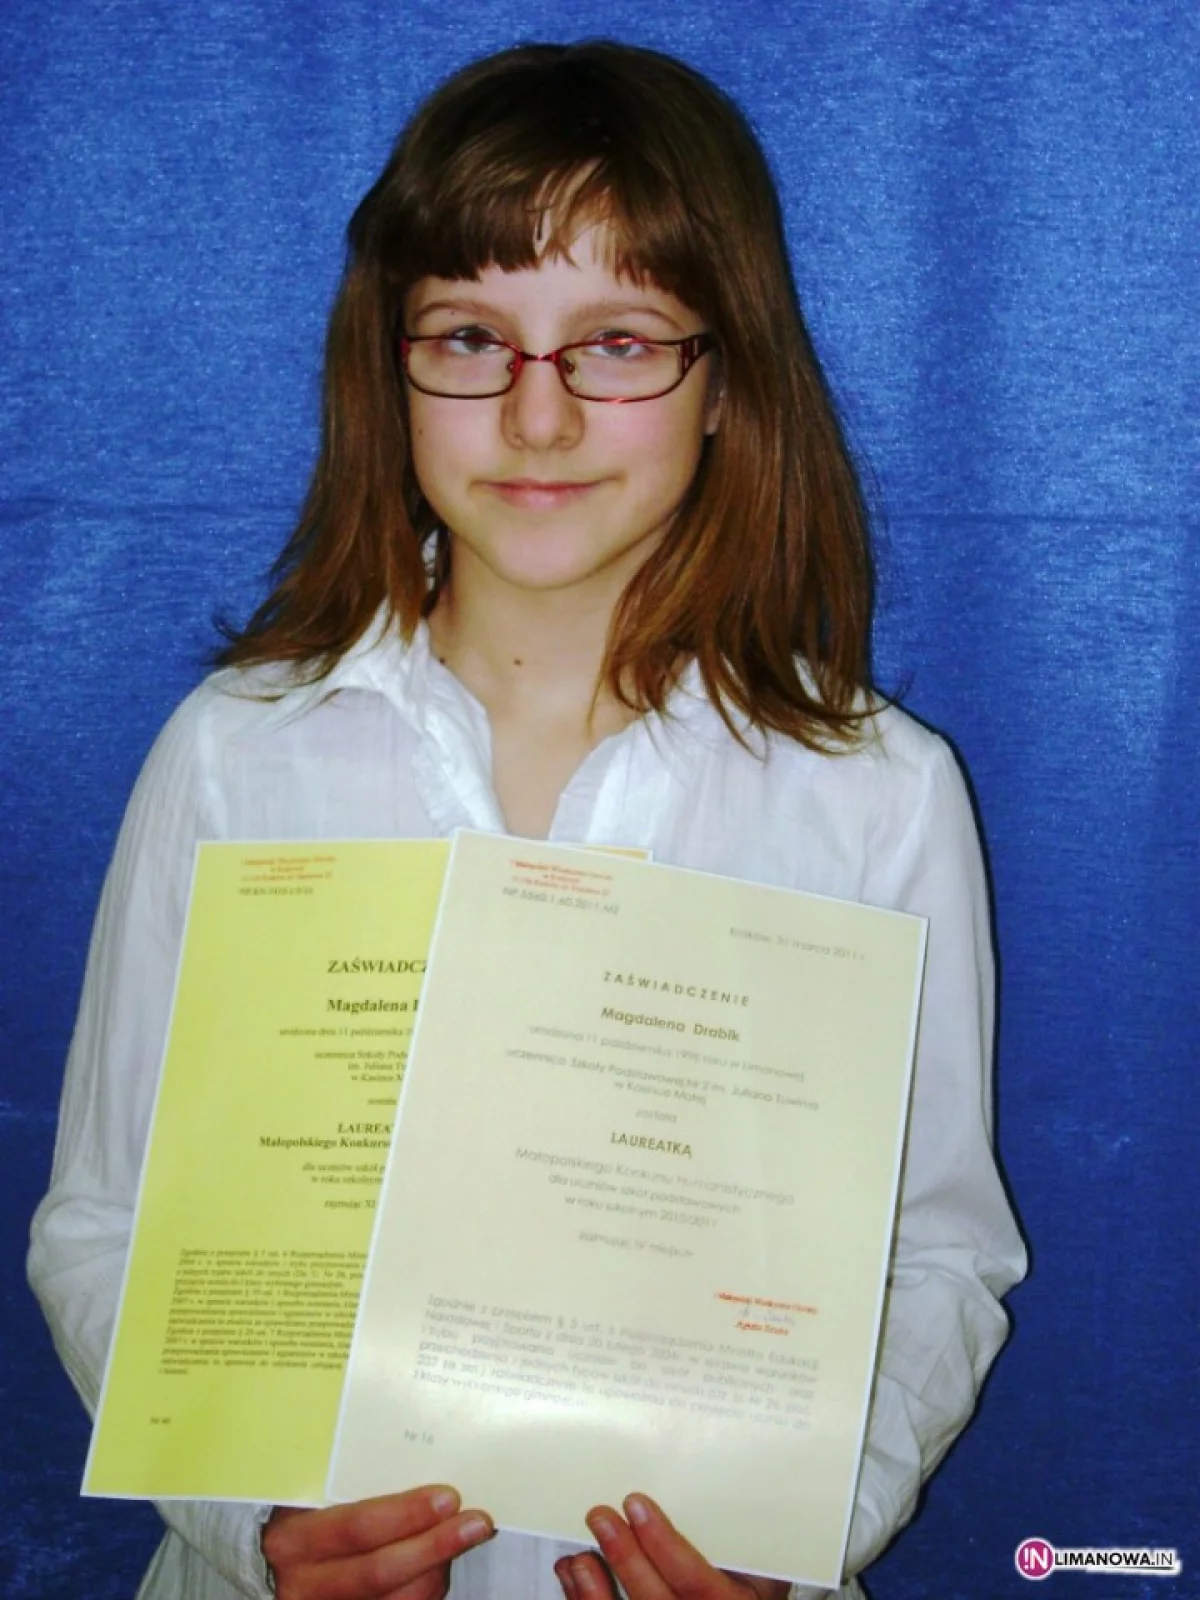 Drugi raz została laureatką Małopolskiego Konkursu